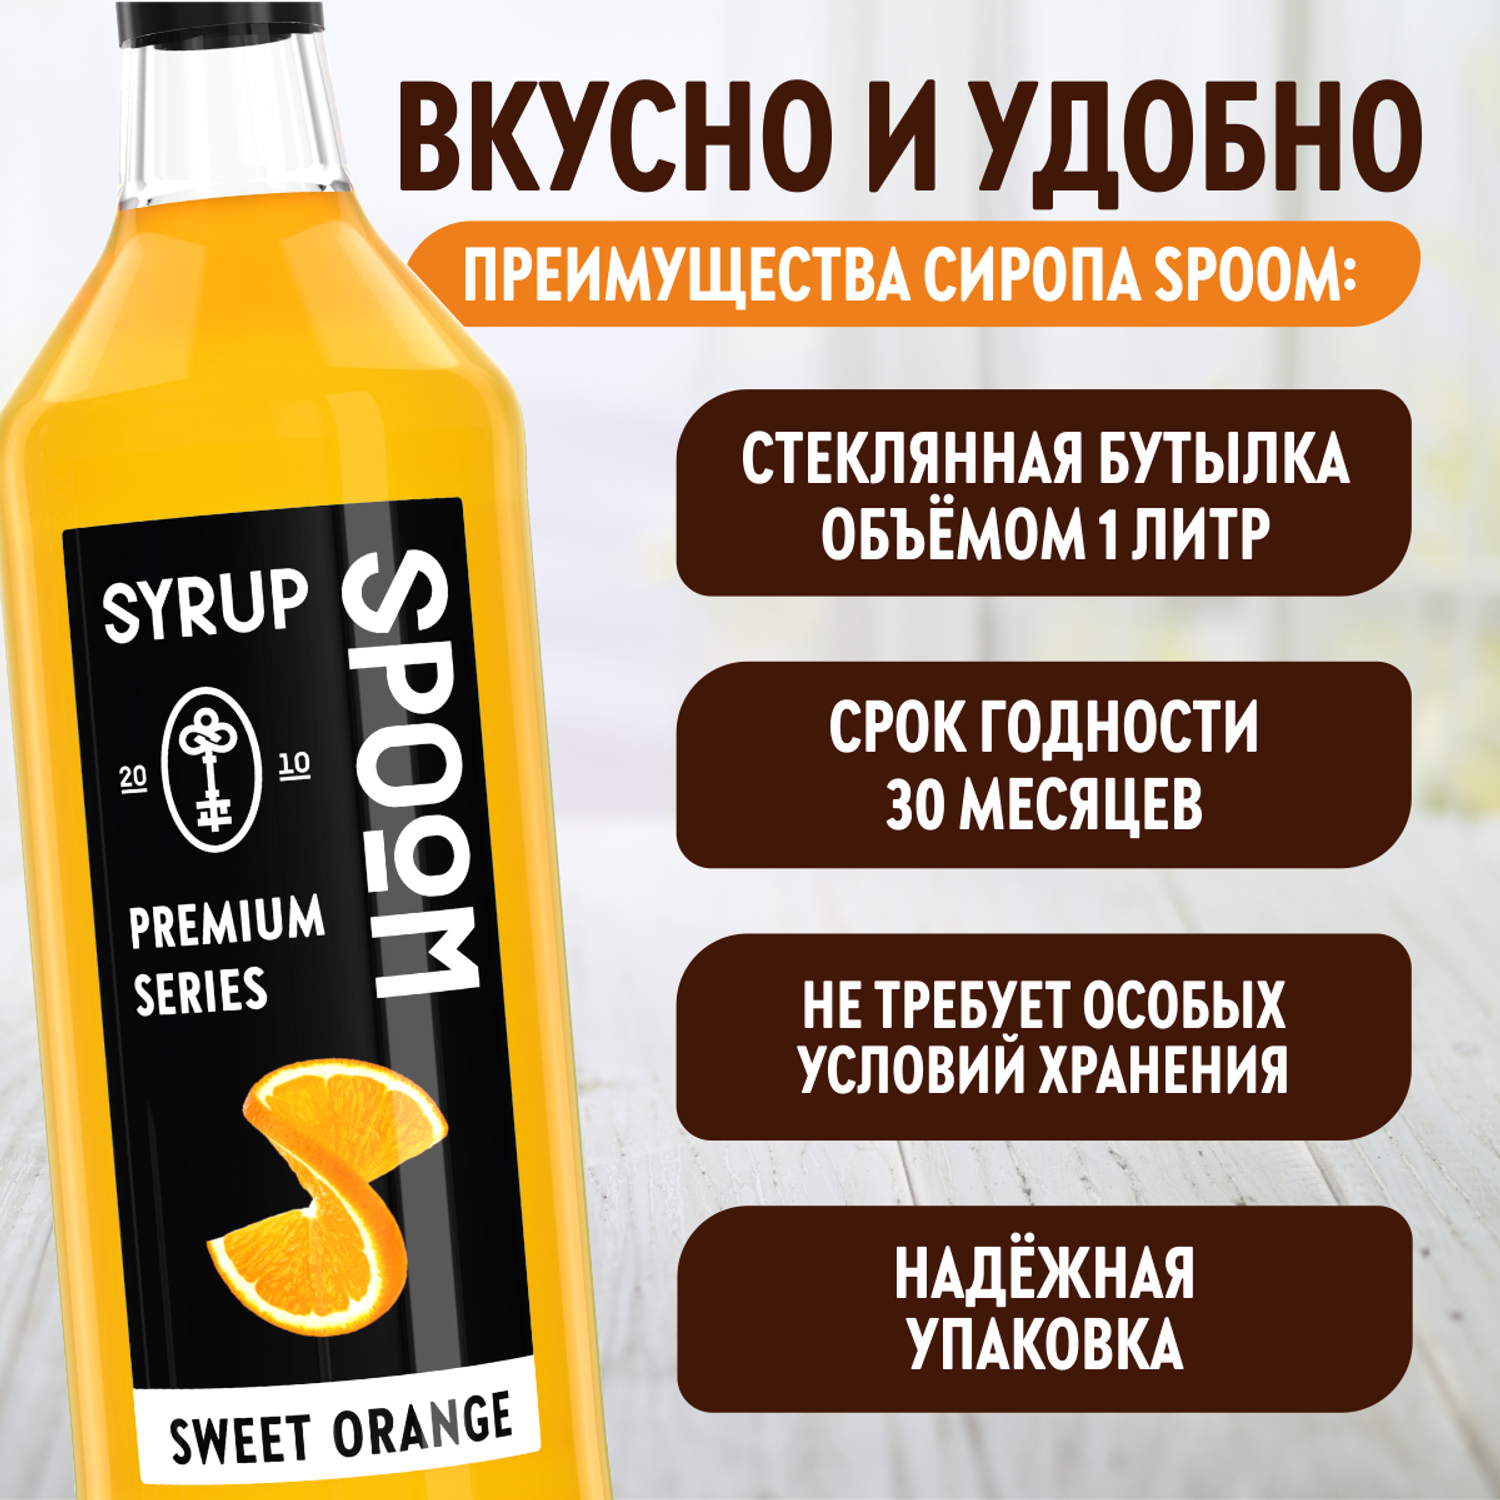 Сироп SPOOM Сладкий апельсин 1л для кофе коктейлей и десертов - фото 4